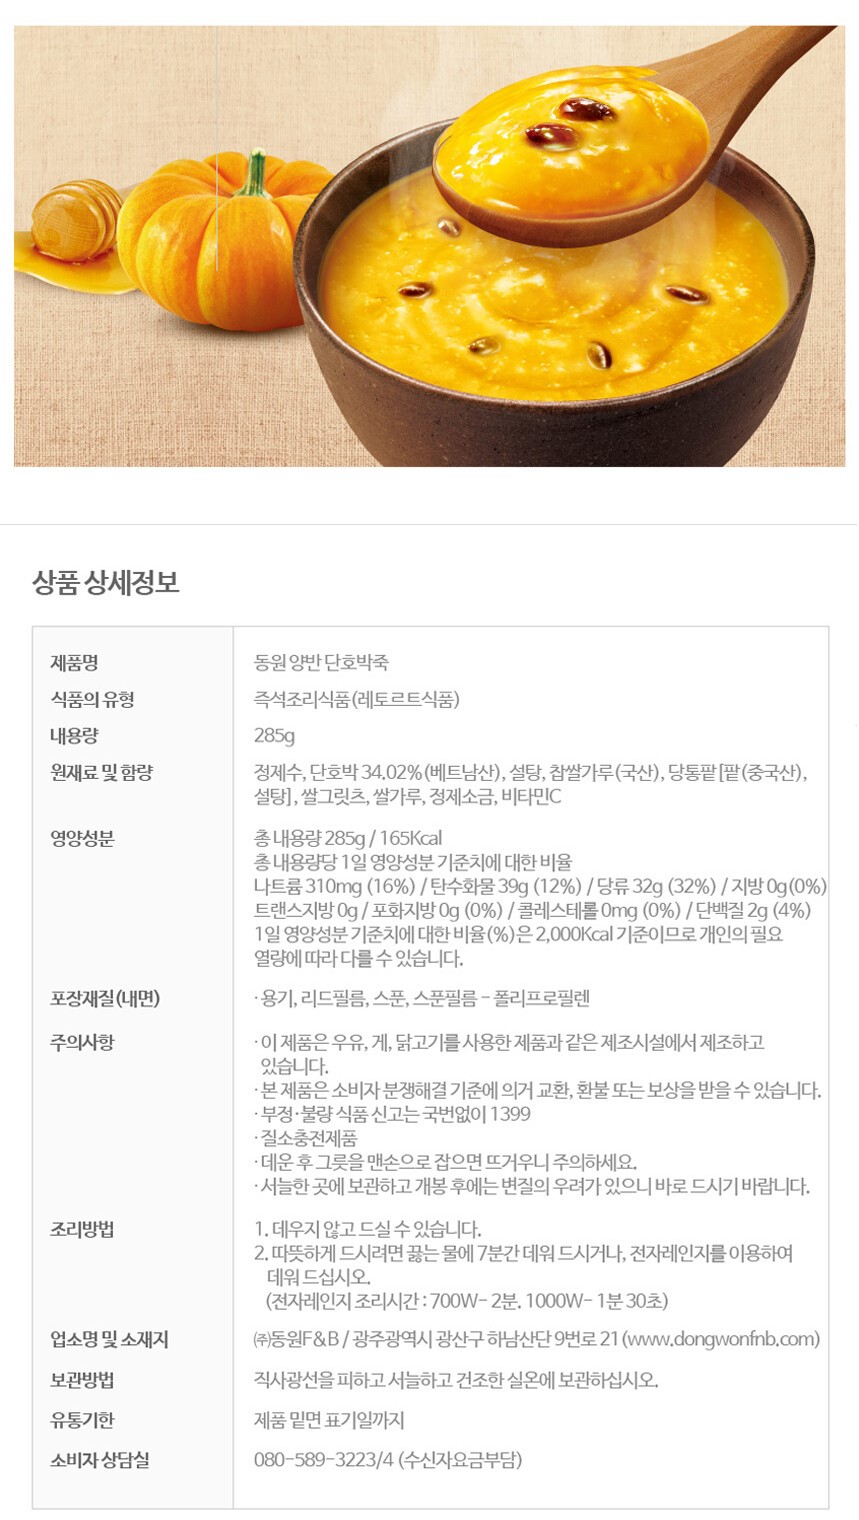 韓國食品-[동원] 양반 단호박죽 285g